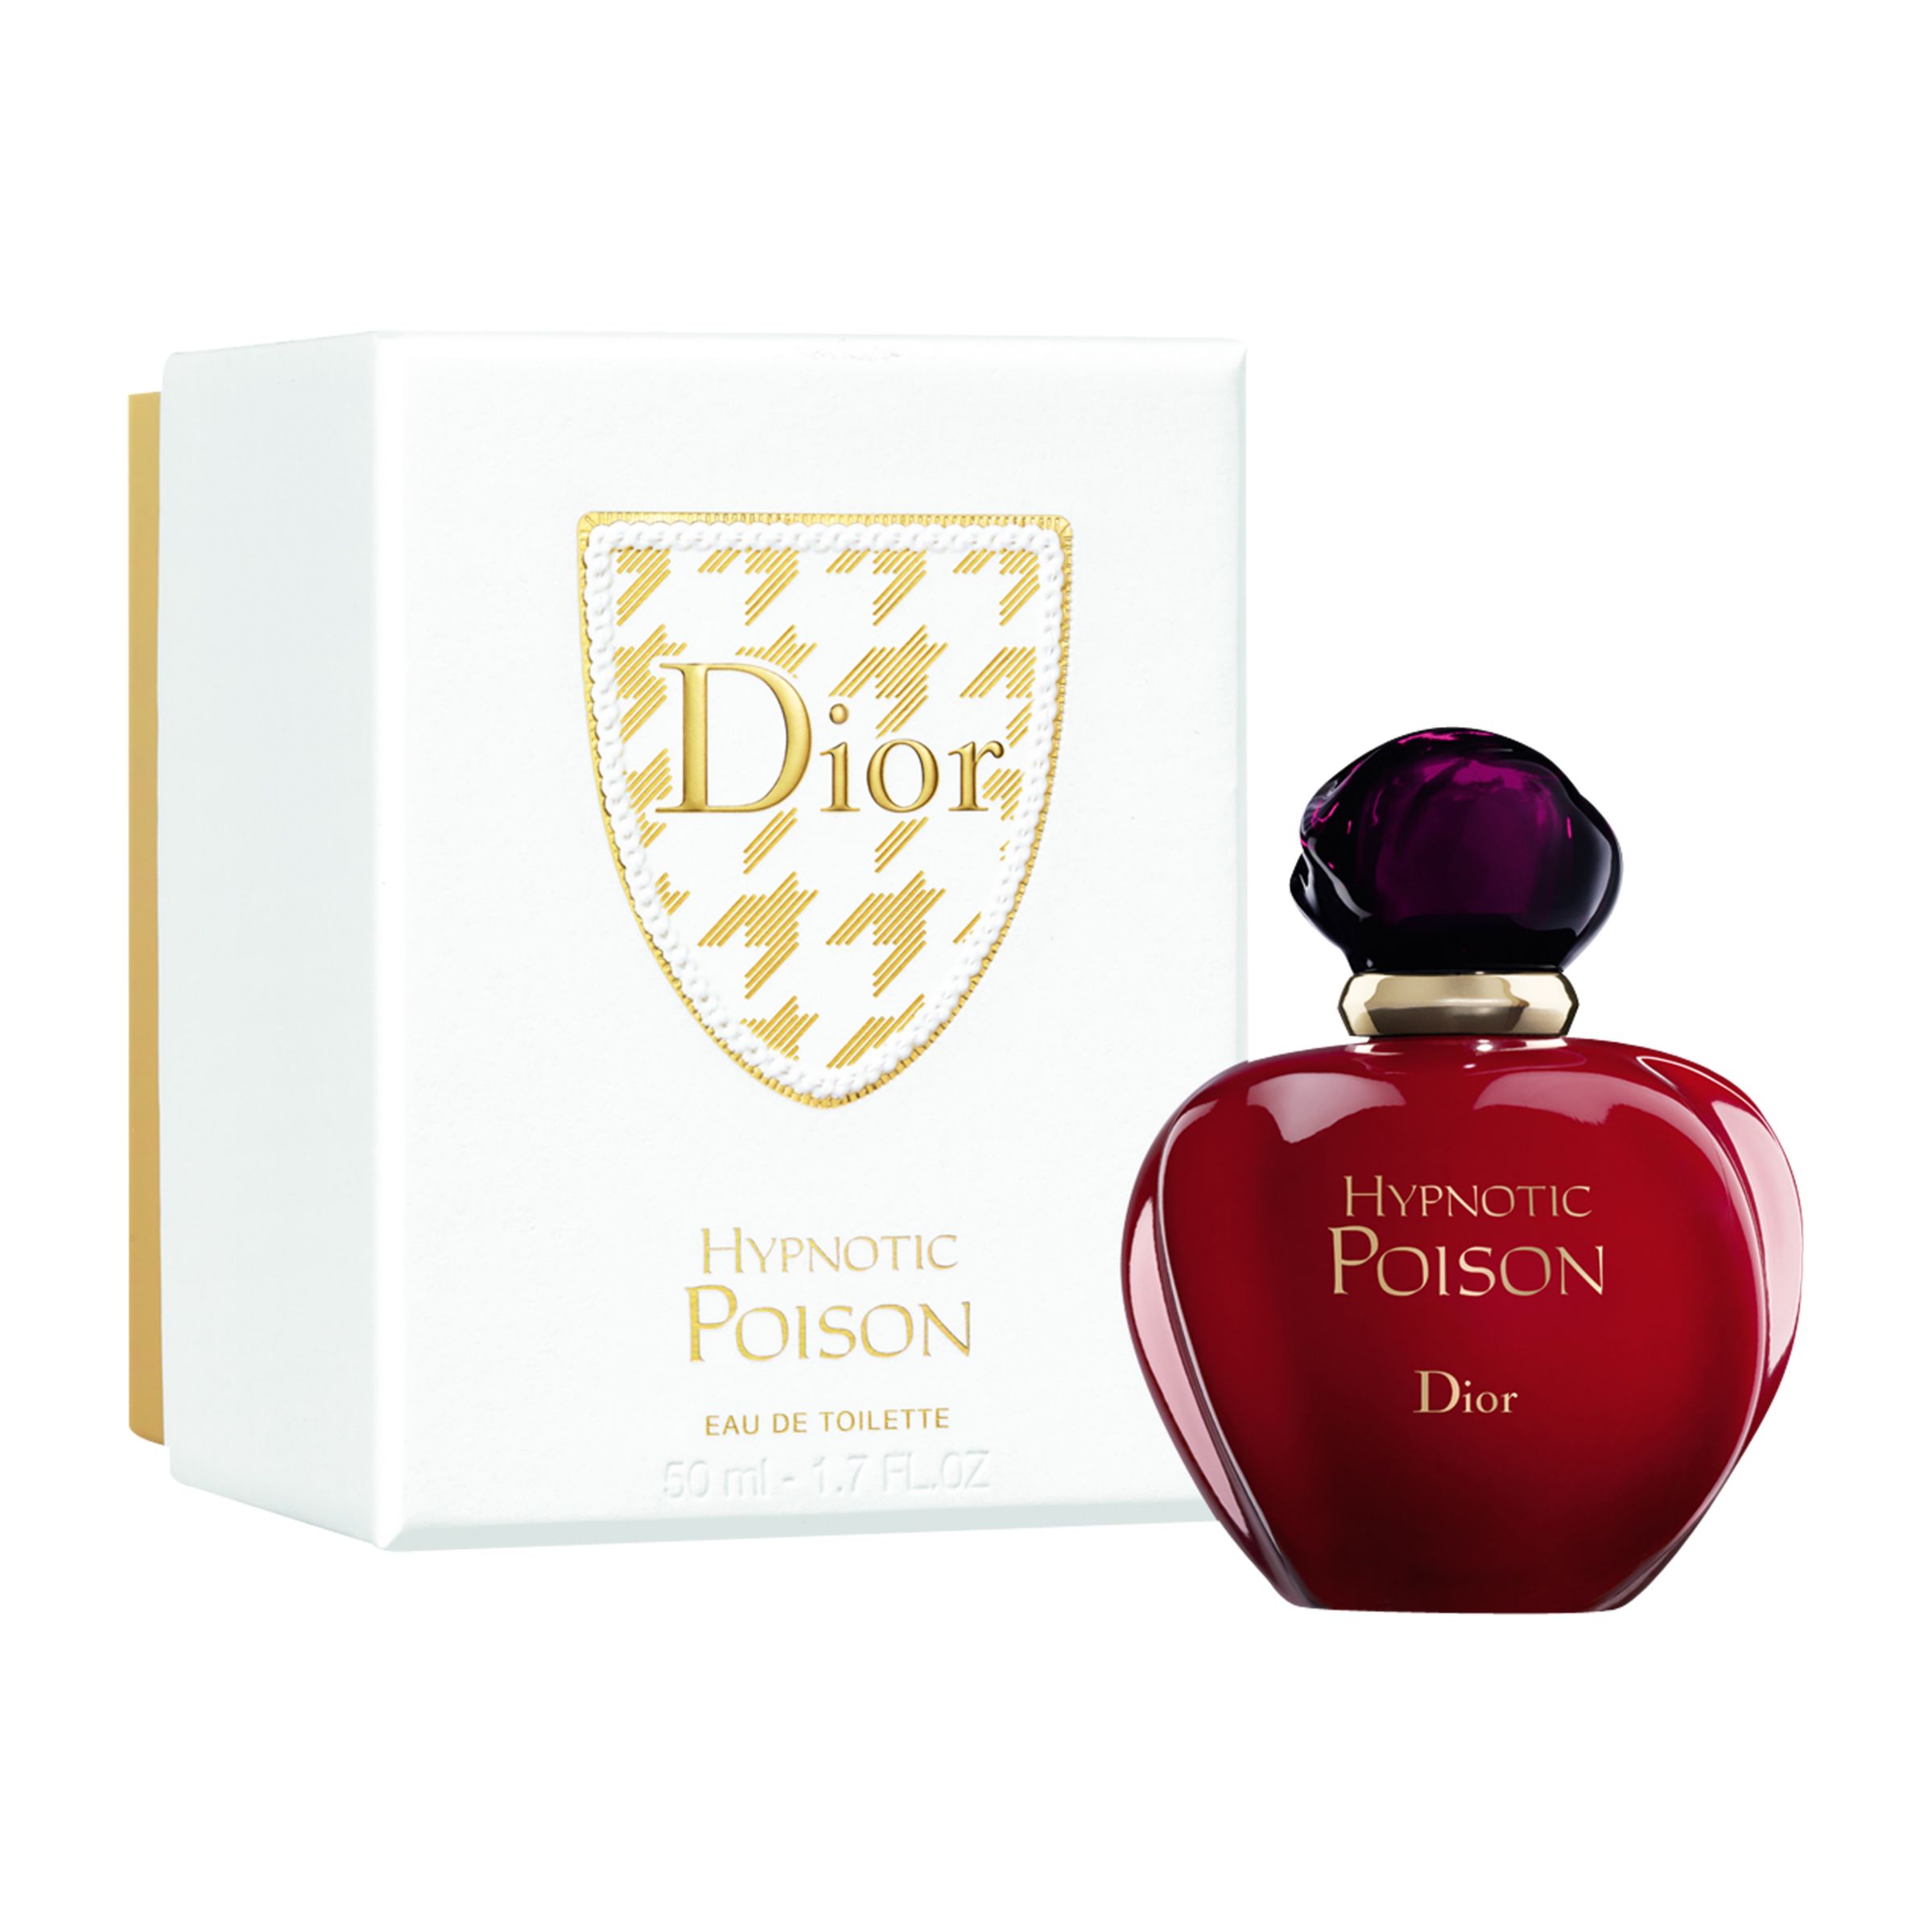 dior poison gift set